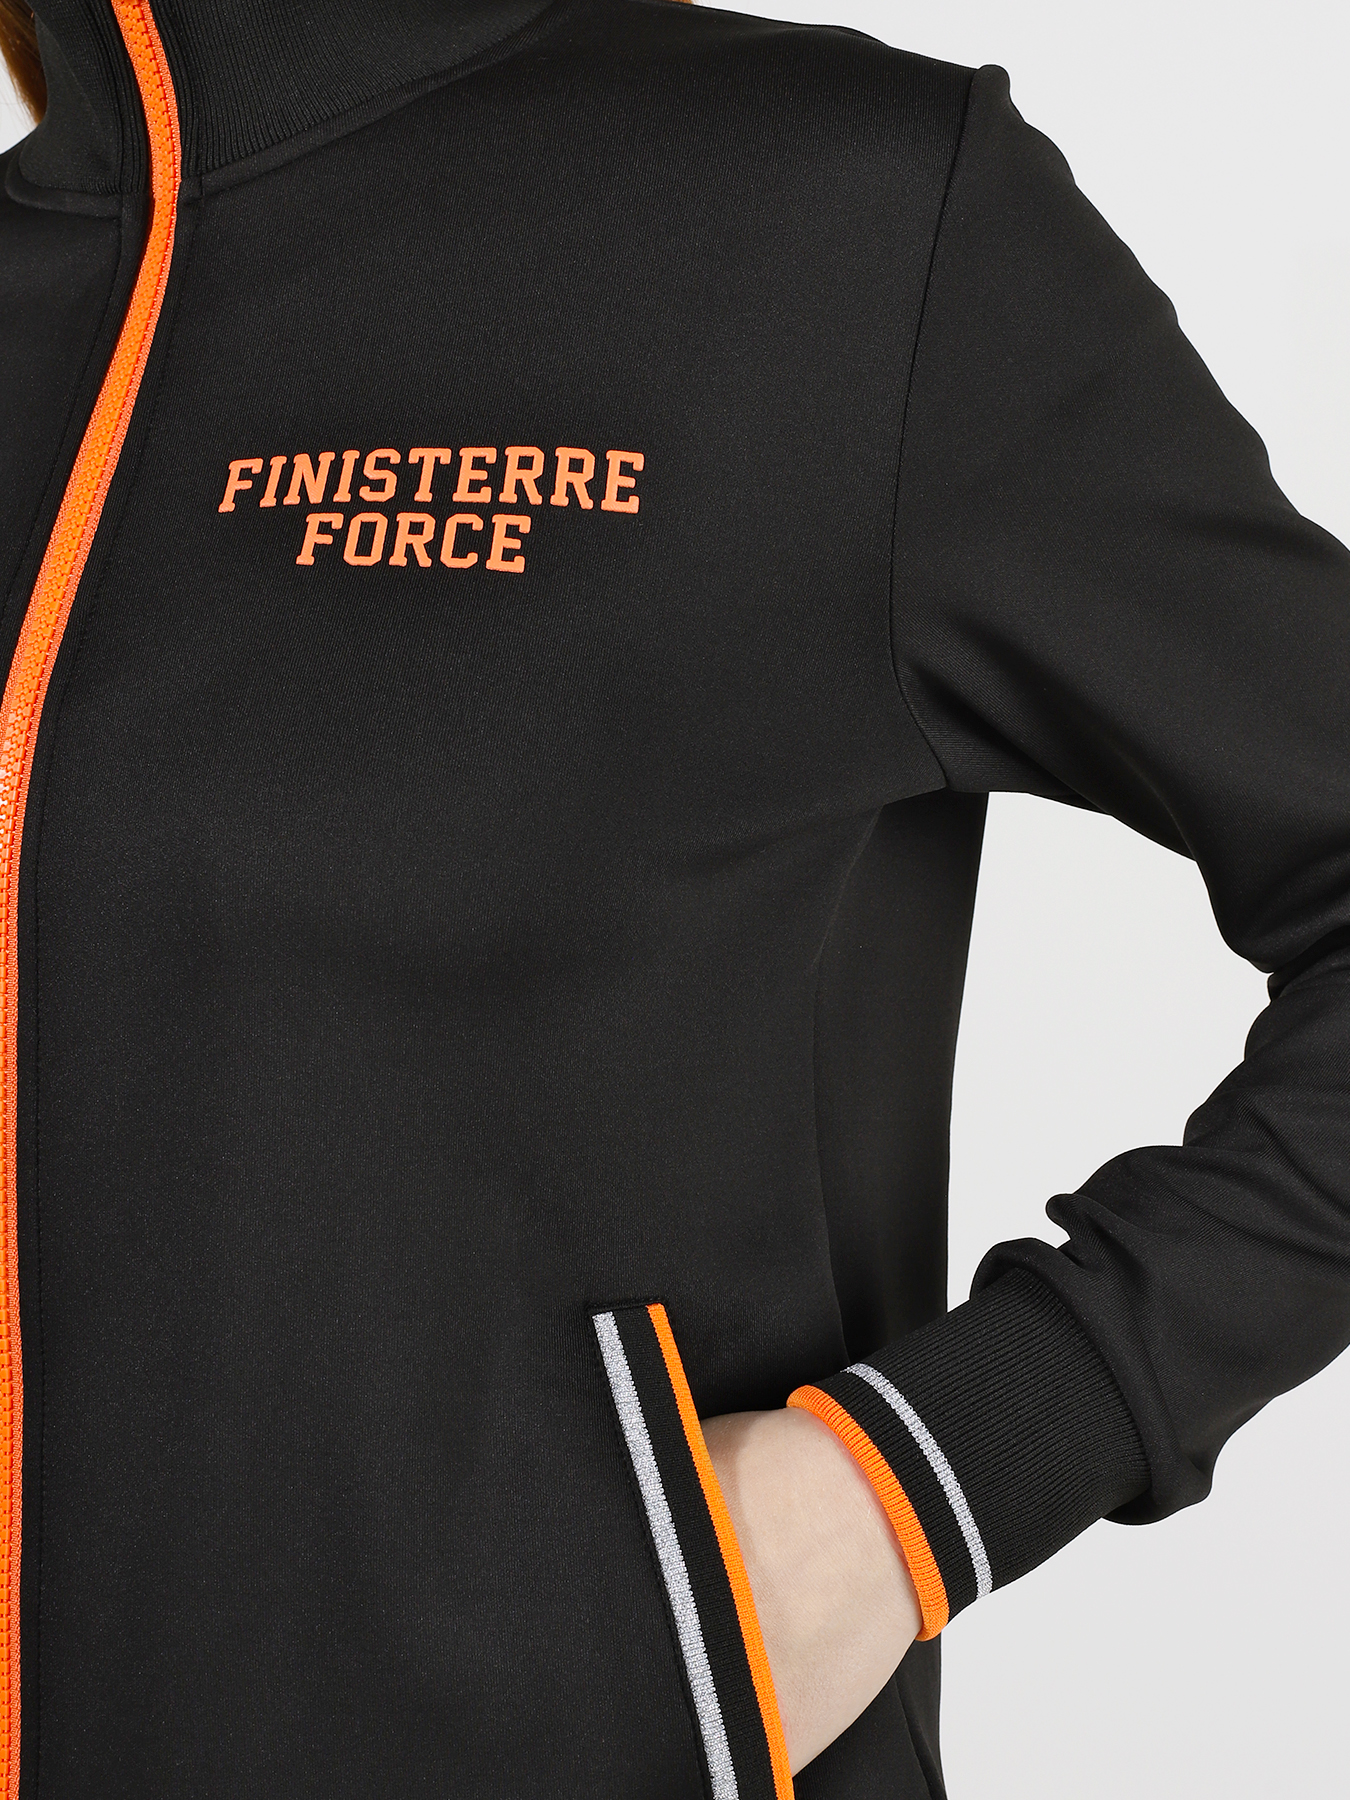 Finisterre Force Спортивный костюм 358299-020 Фото 5